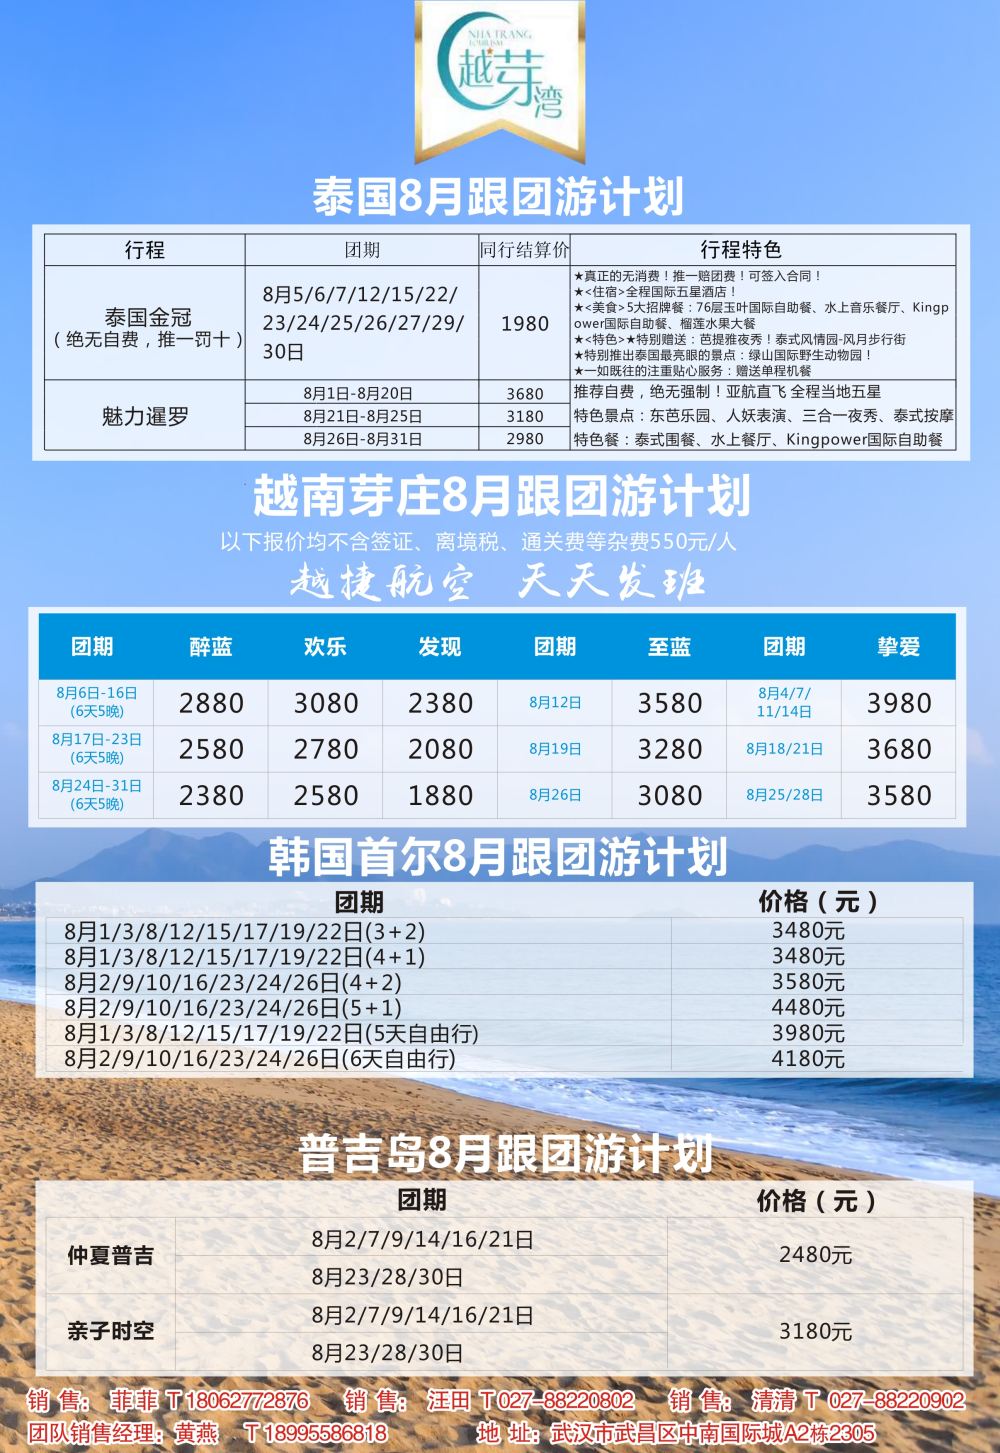 武汉联盟假期旅游服务有限公司